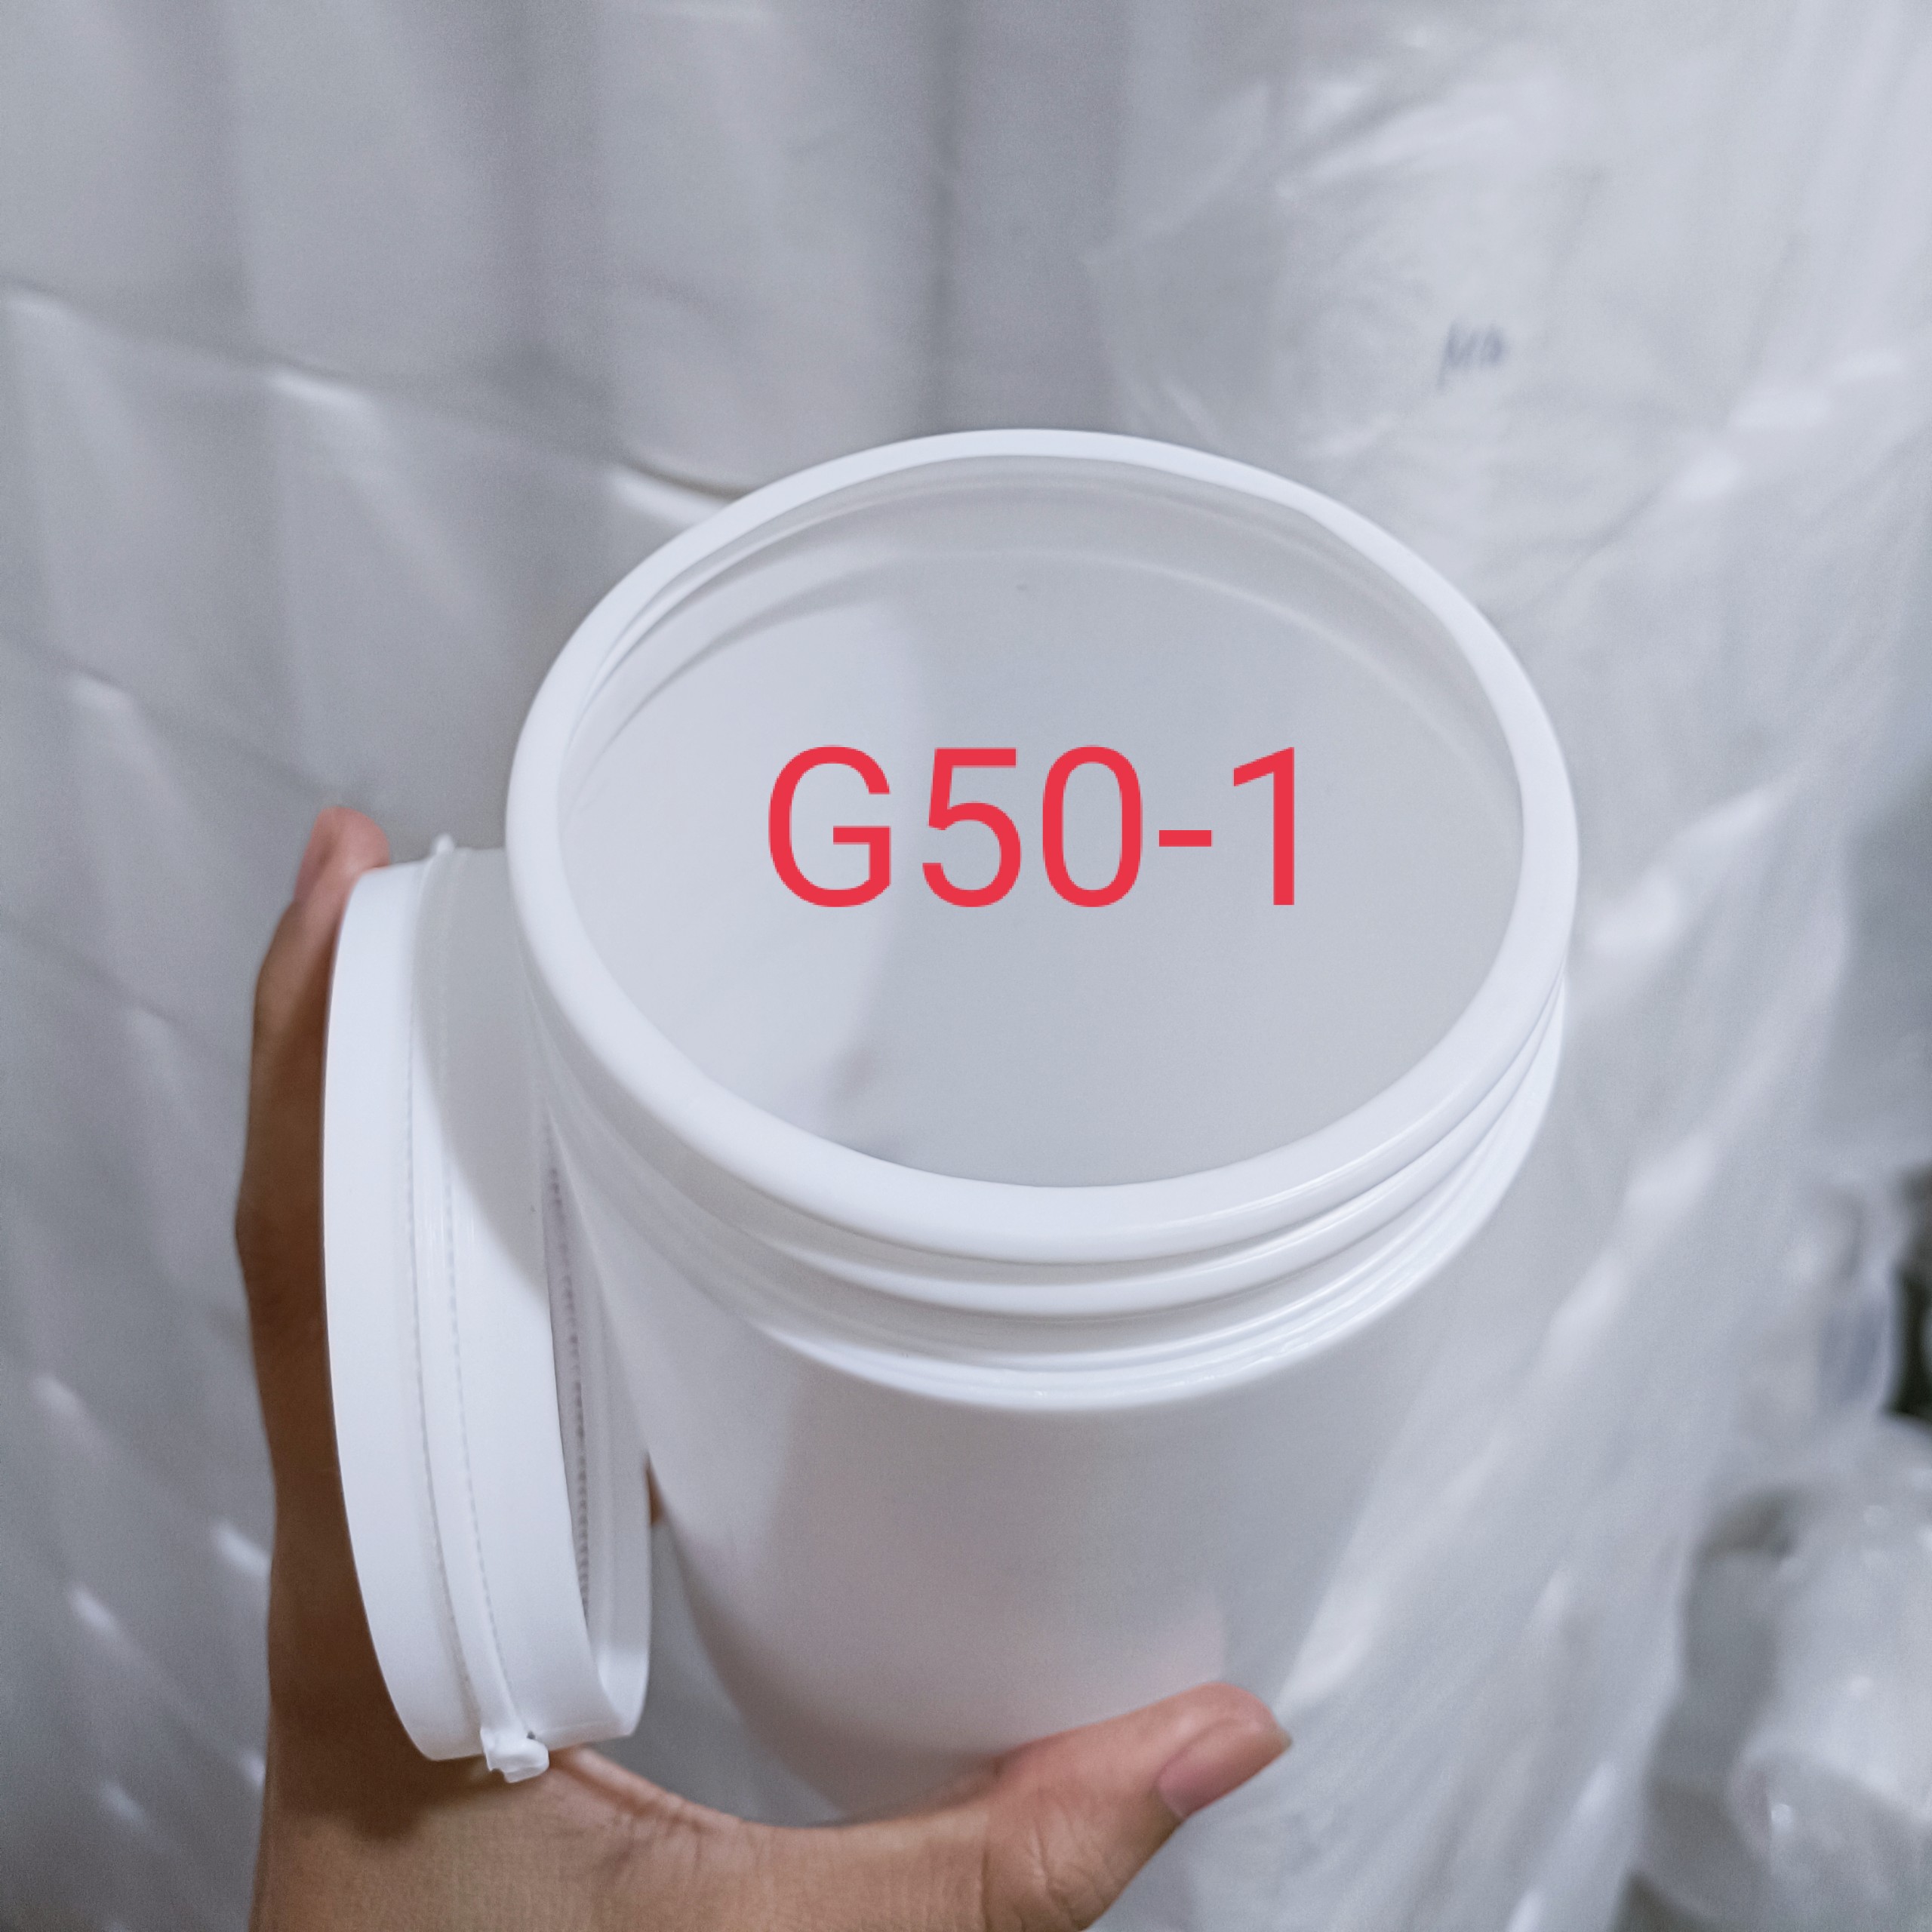 1 Hủ Nhựa Trắng Đục Nắp Galenti Đựng Từ 700G Đến 900g Bột Mịn, G50-1